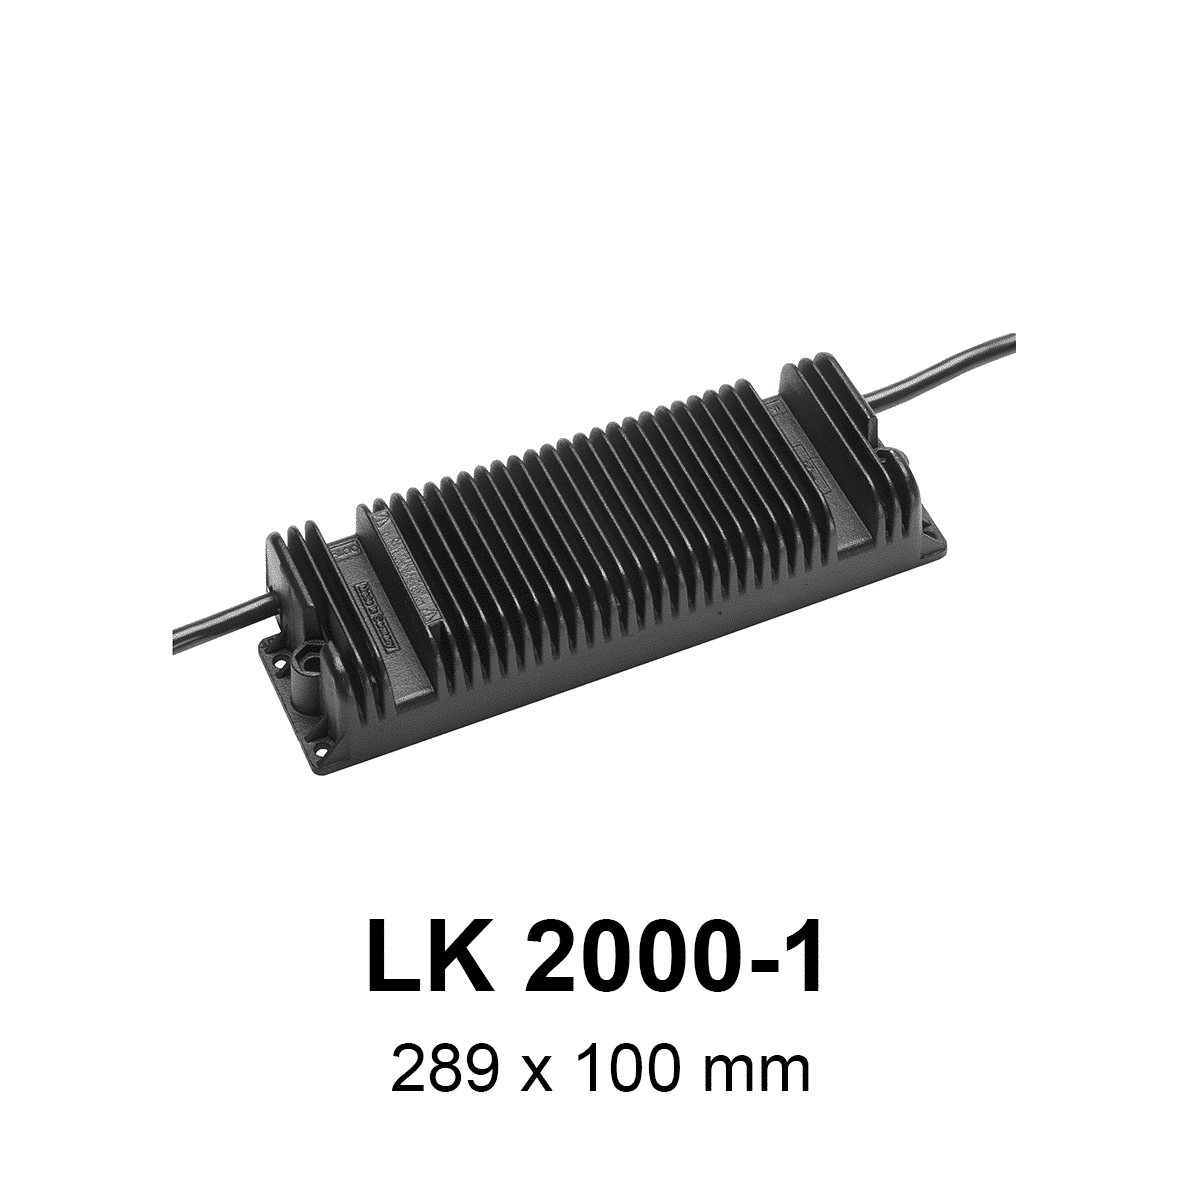 Kontrollbox LK 2000-1 - Jokon